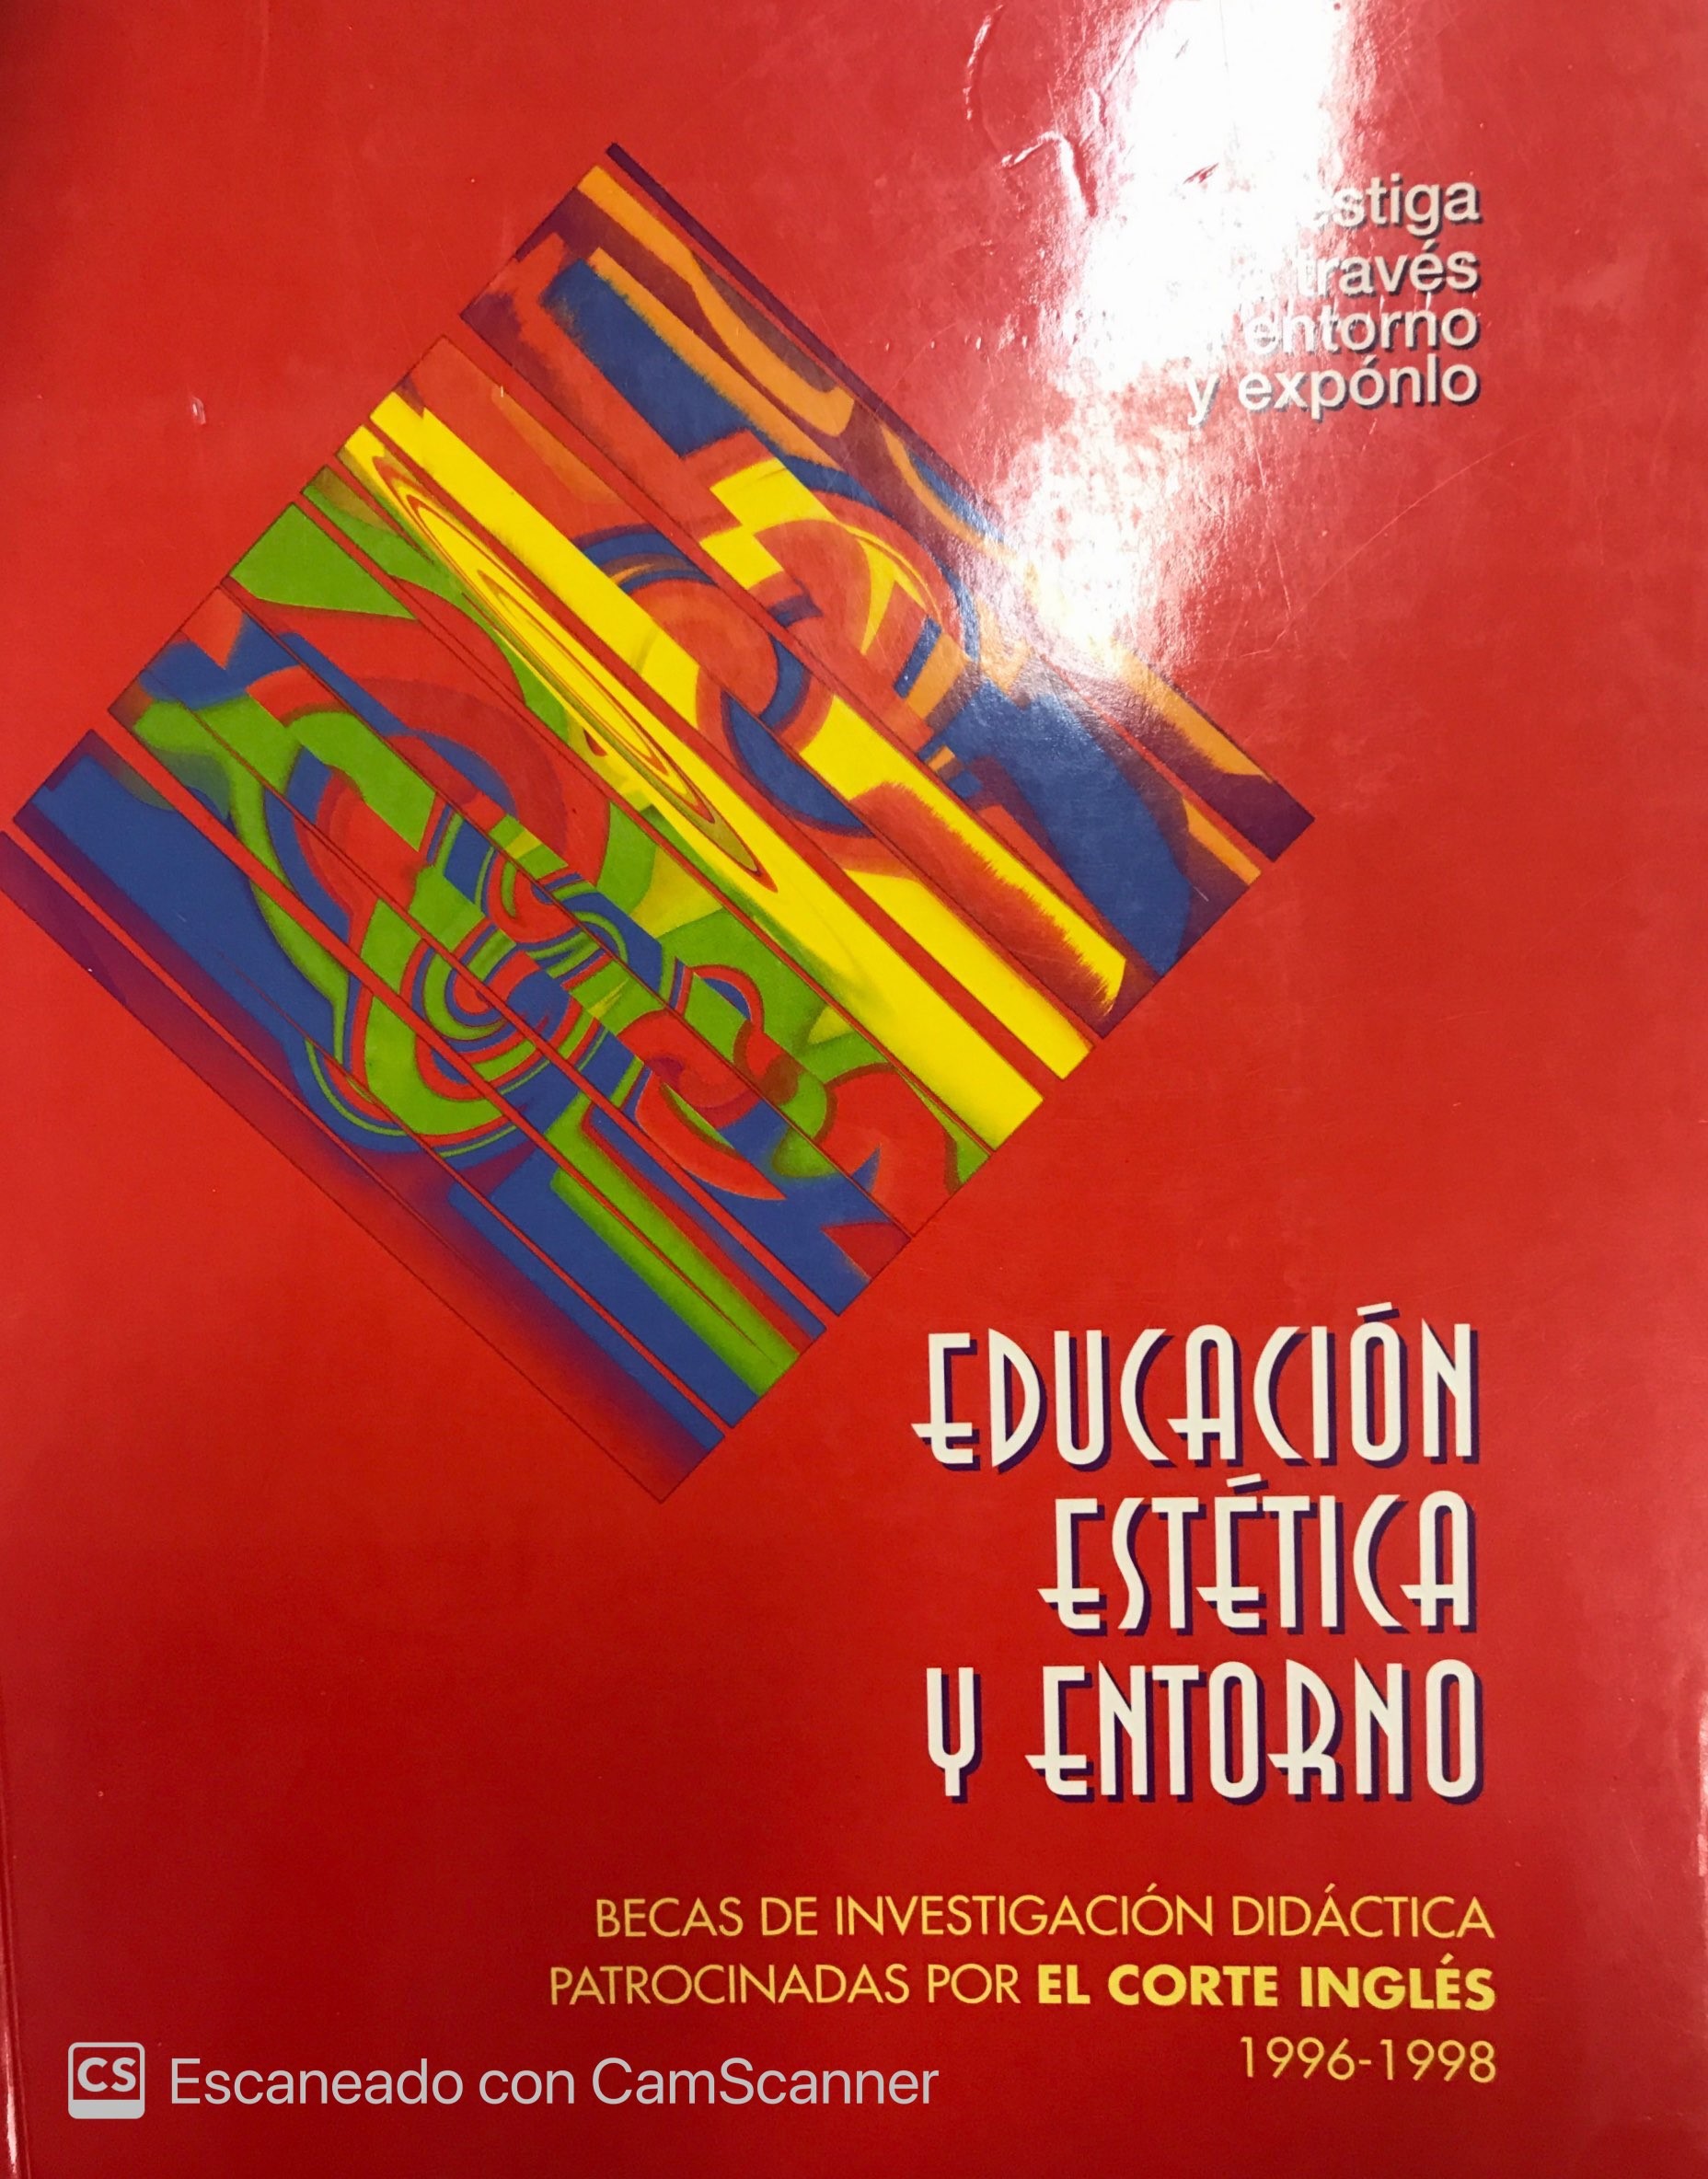 Imagen de portada del libro Educación estética y entorno